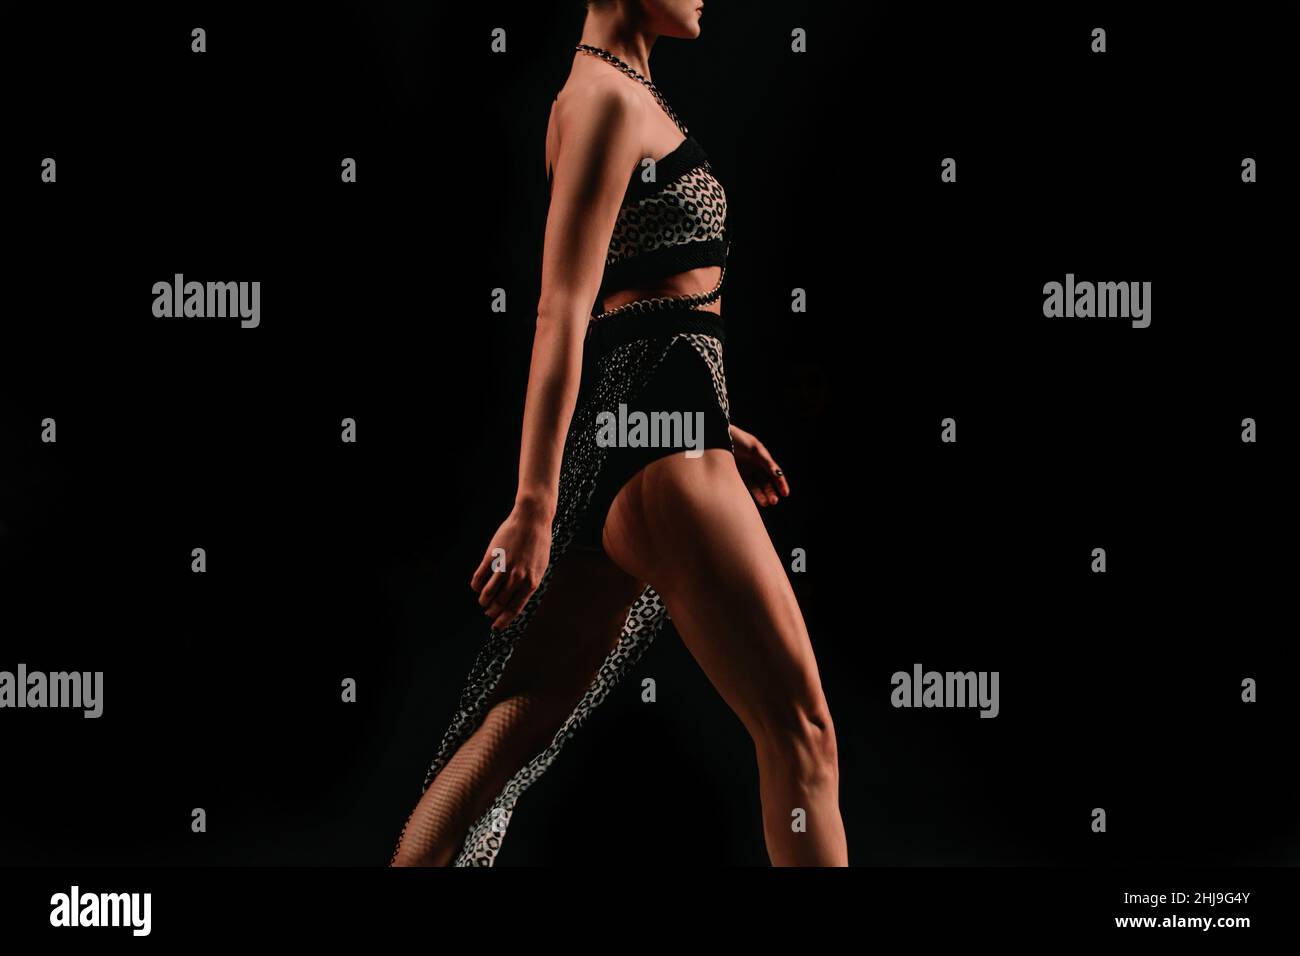 Weibliche Figur in einem Crop Top und Rock zu Fuß auf einem schwarzen Hintergrund gekleidet. Modisch ausgefallene Details Stockfoto